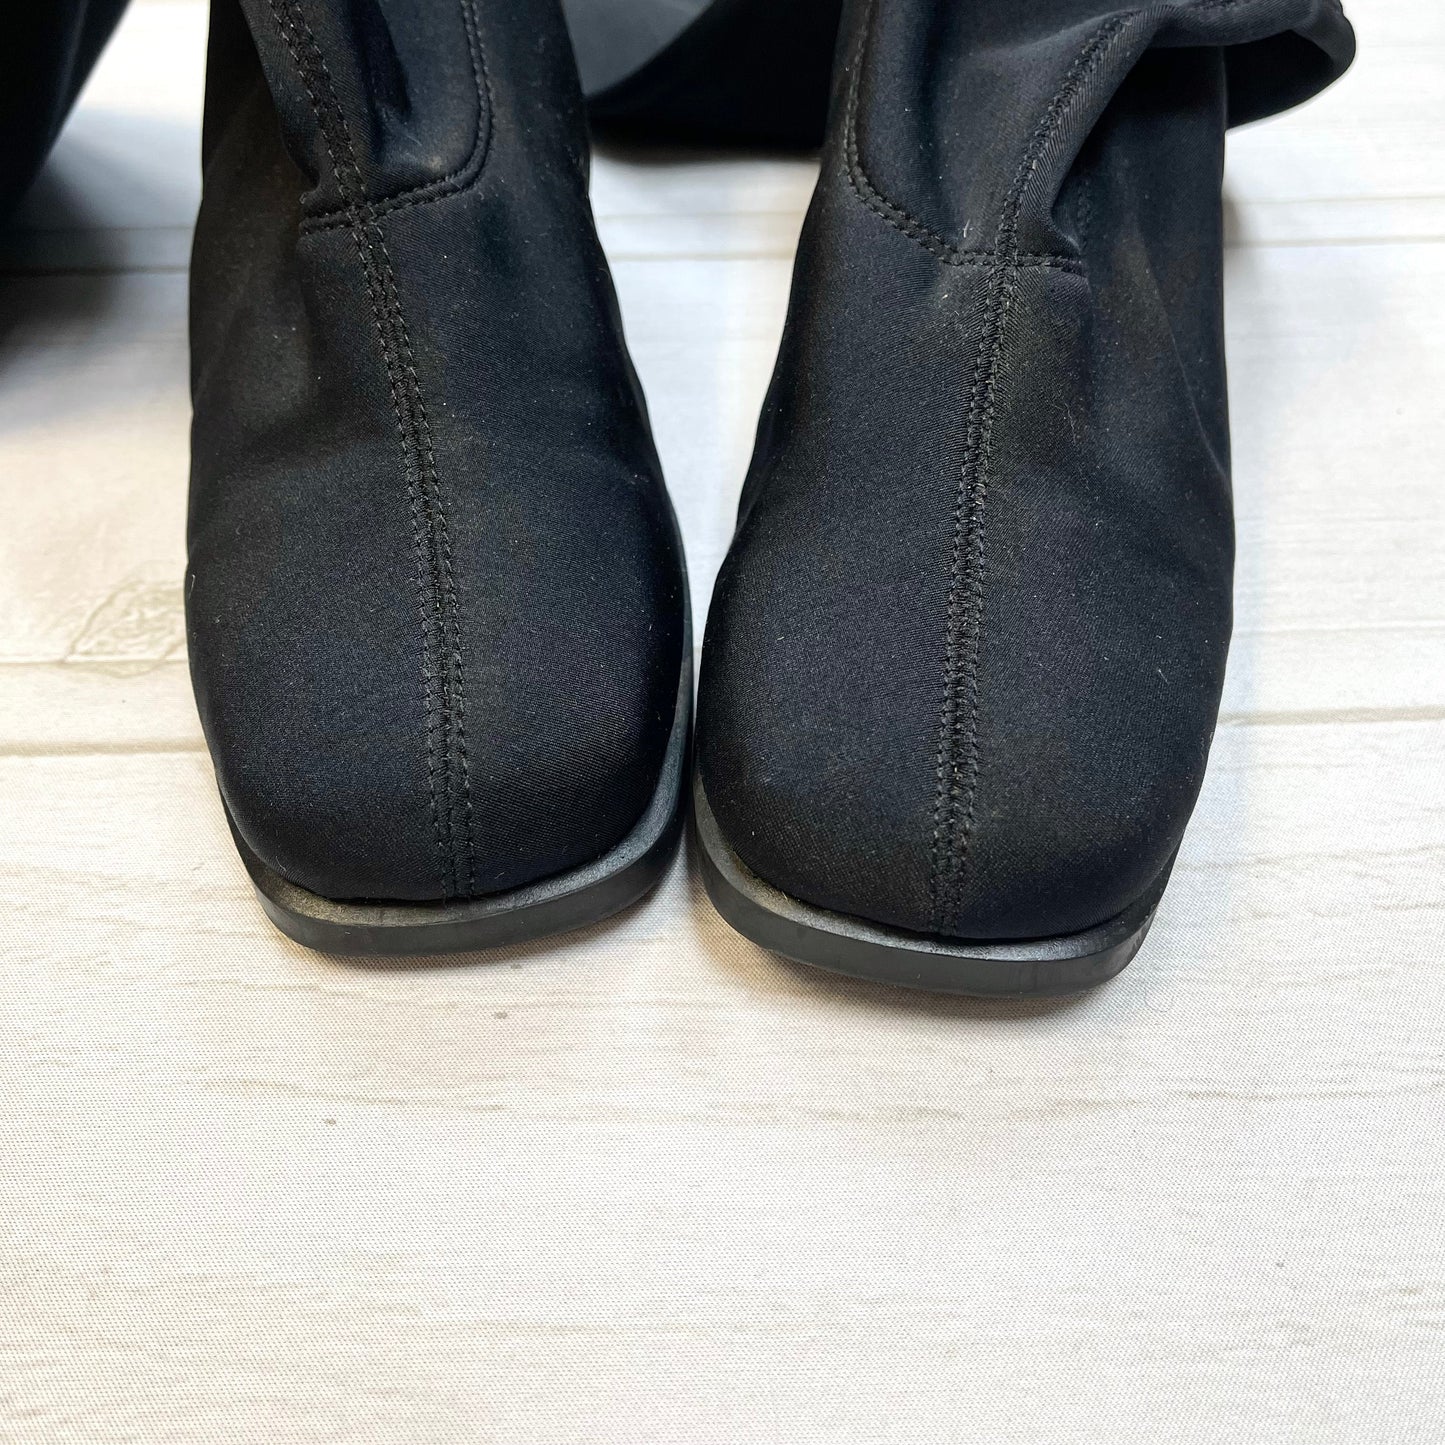 Boots Mid-calf Heels By Merona  Size: 7.5